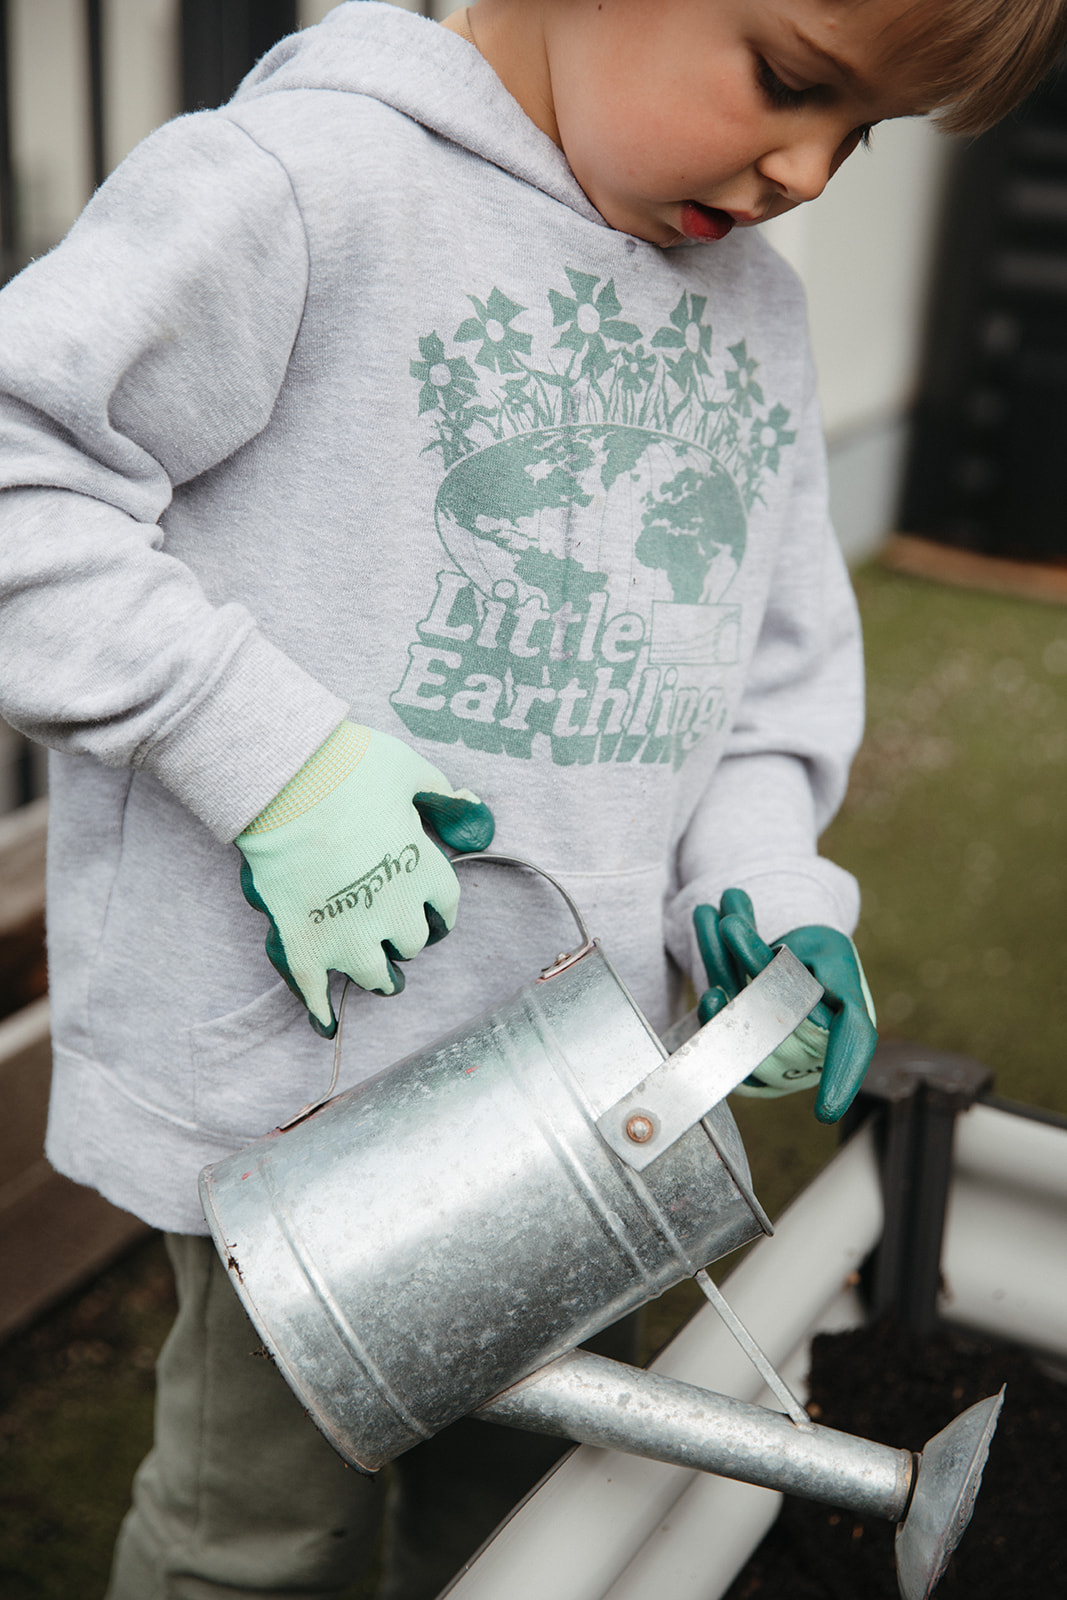 Toddler wearing gardening gloves using watering can